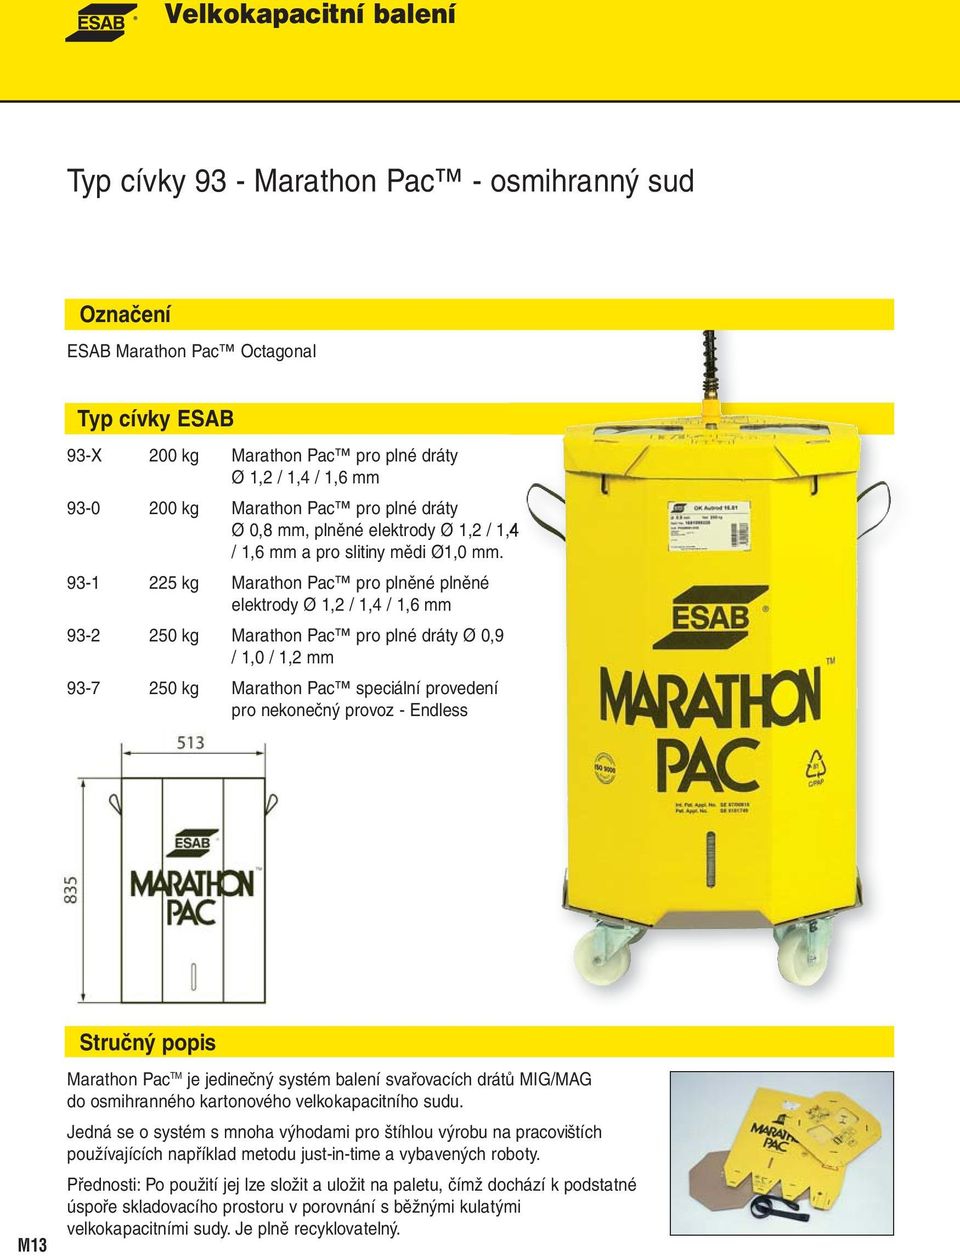 93-1 225 kg Marathon Pac pro plněné plněné elektrody Ø 1,2 / 1,4 / 1,6 mm 93-2 250 kg Marathon Pac pro plné dráty Ø 0,9 / 1,0 / 1,2 mm 93-7 250 kg Marathon Pac speciální provedení pro nekonečný